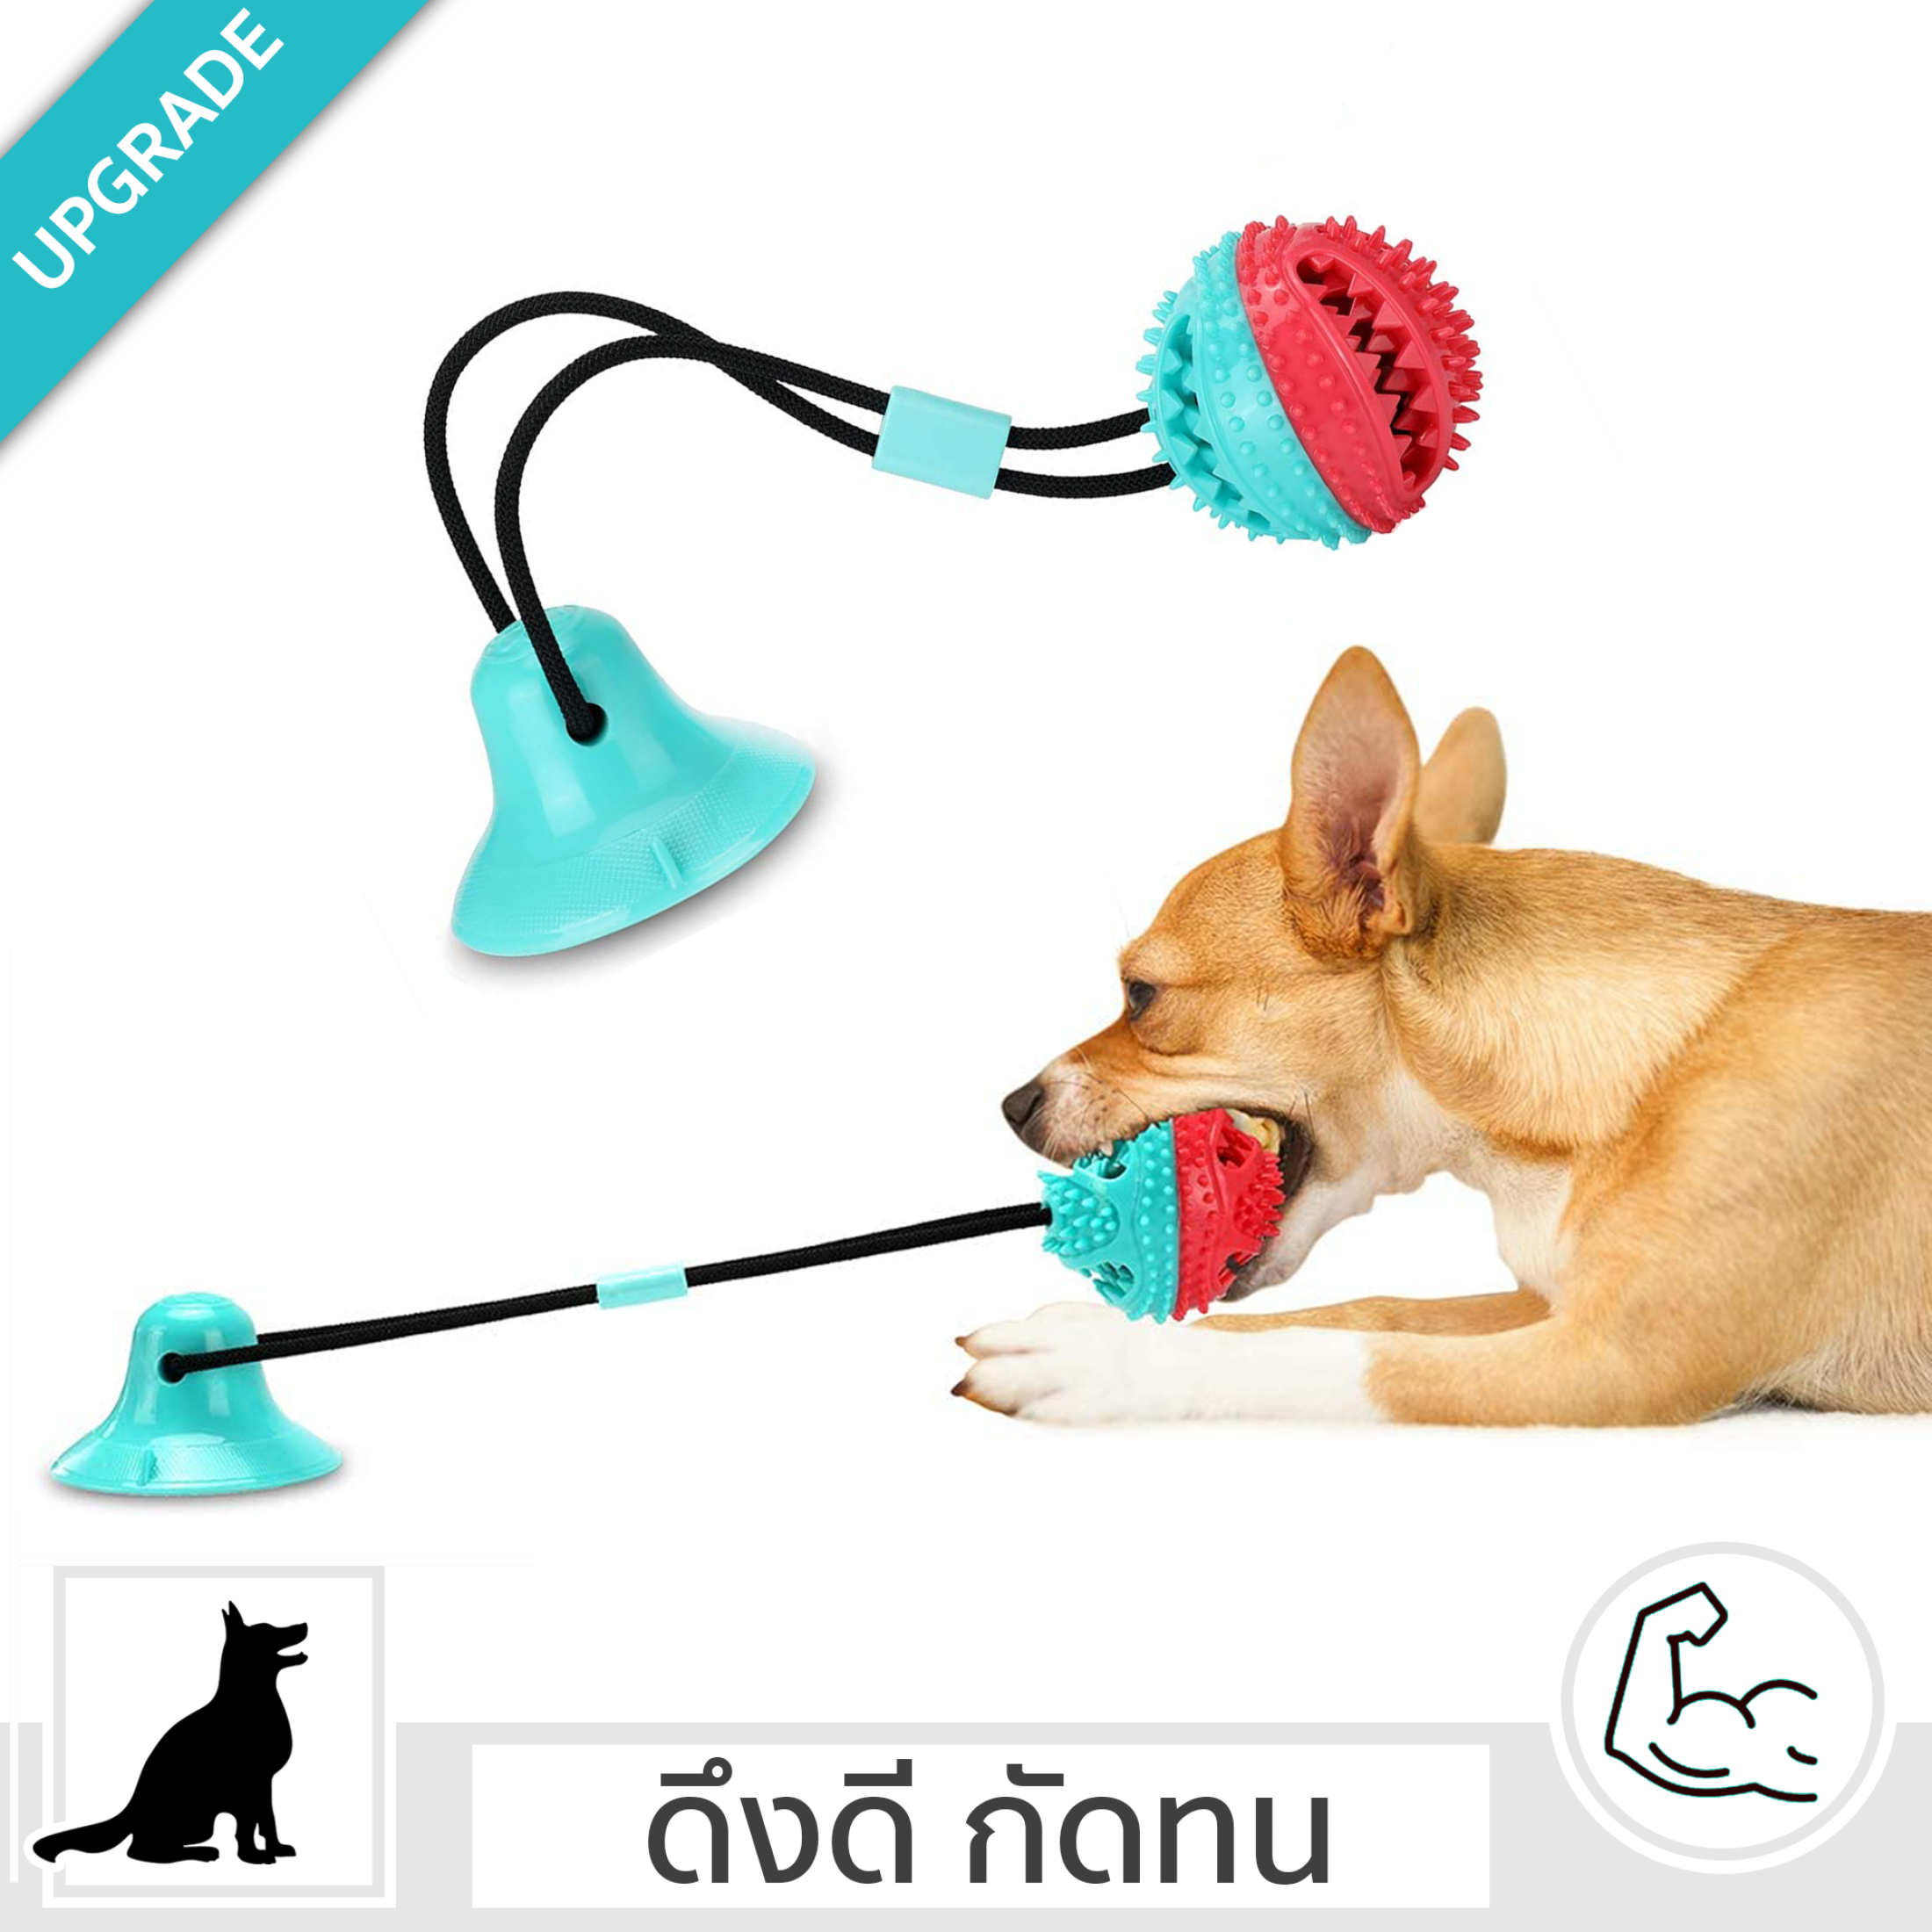 ของเล่นหมา ของเล่นสุนัข เชือกดึง ลูกบอลเชือกดึง ที่กัดฟันกรามสุนัข ของเล่นหมา ช่วยให้น้องออกกำลังกาย